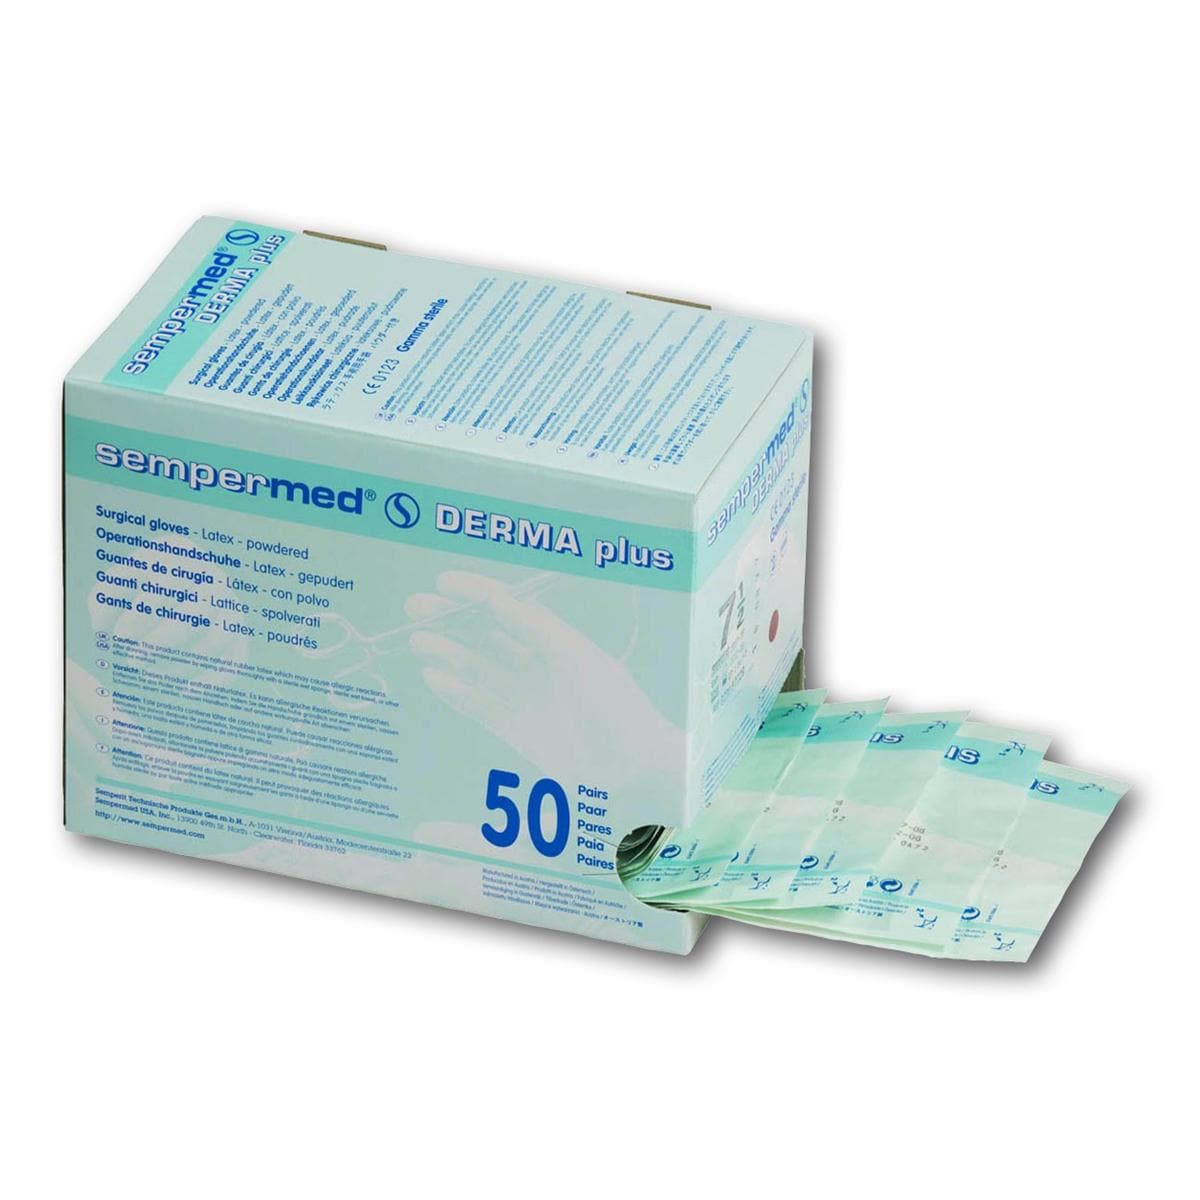 Sempermed® Derma Plus gepudert - Größe 6 1/2, Packung 50 Paar